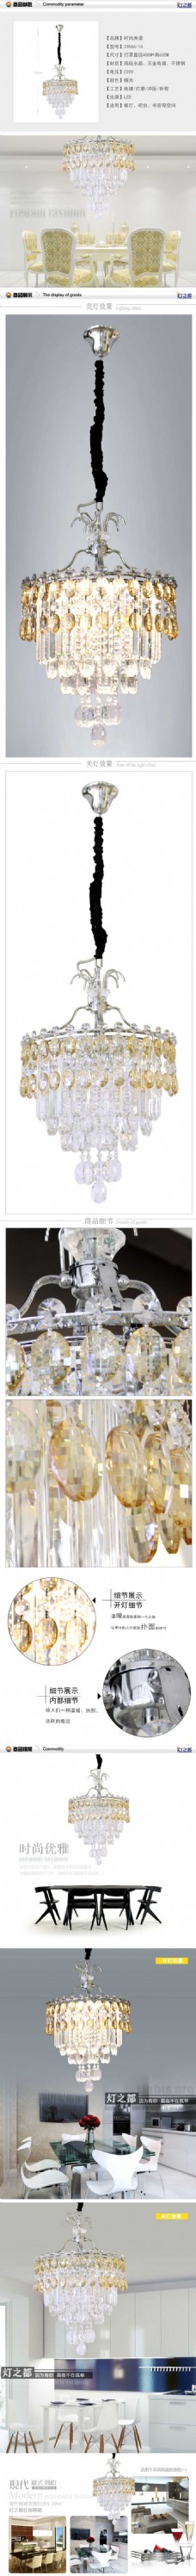 时尚水晶灯-灯具描述